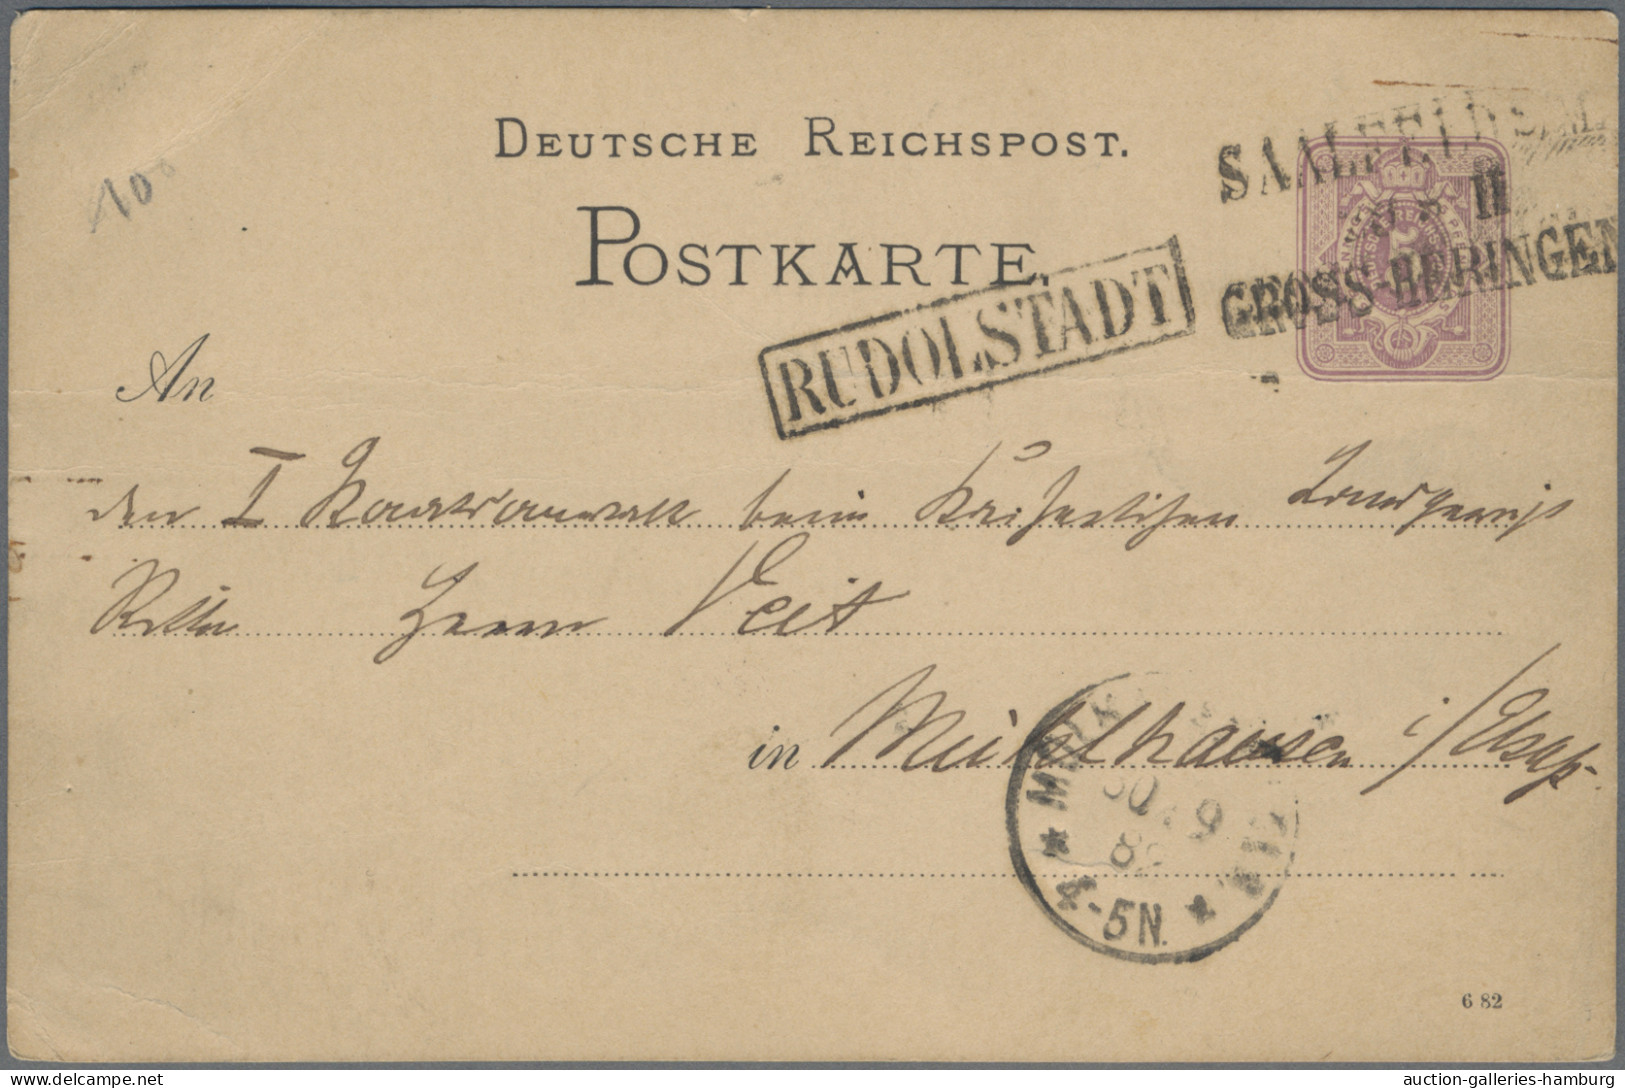 Deutsches Reich - Bahnpost: 1872/1919, Partie von sieben Karten mit Bahnpost-Ent